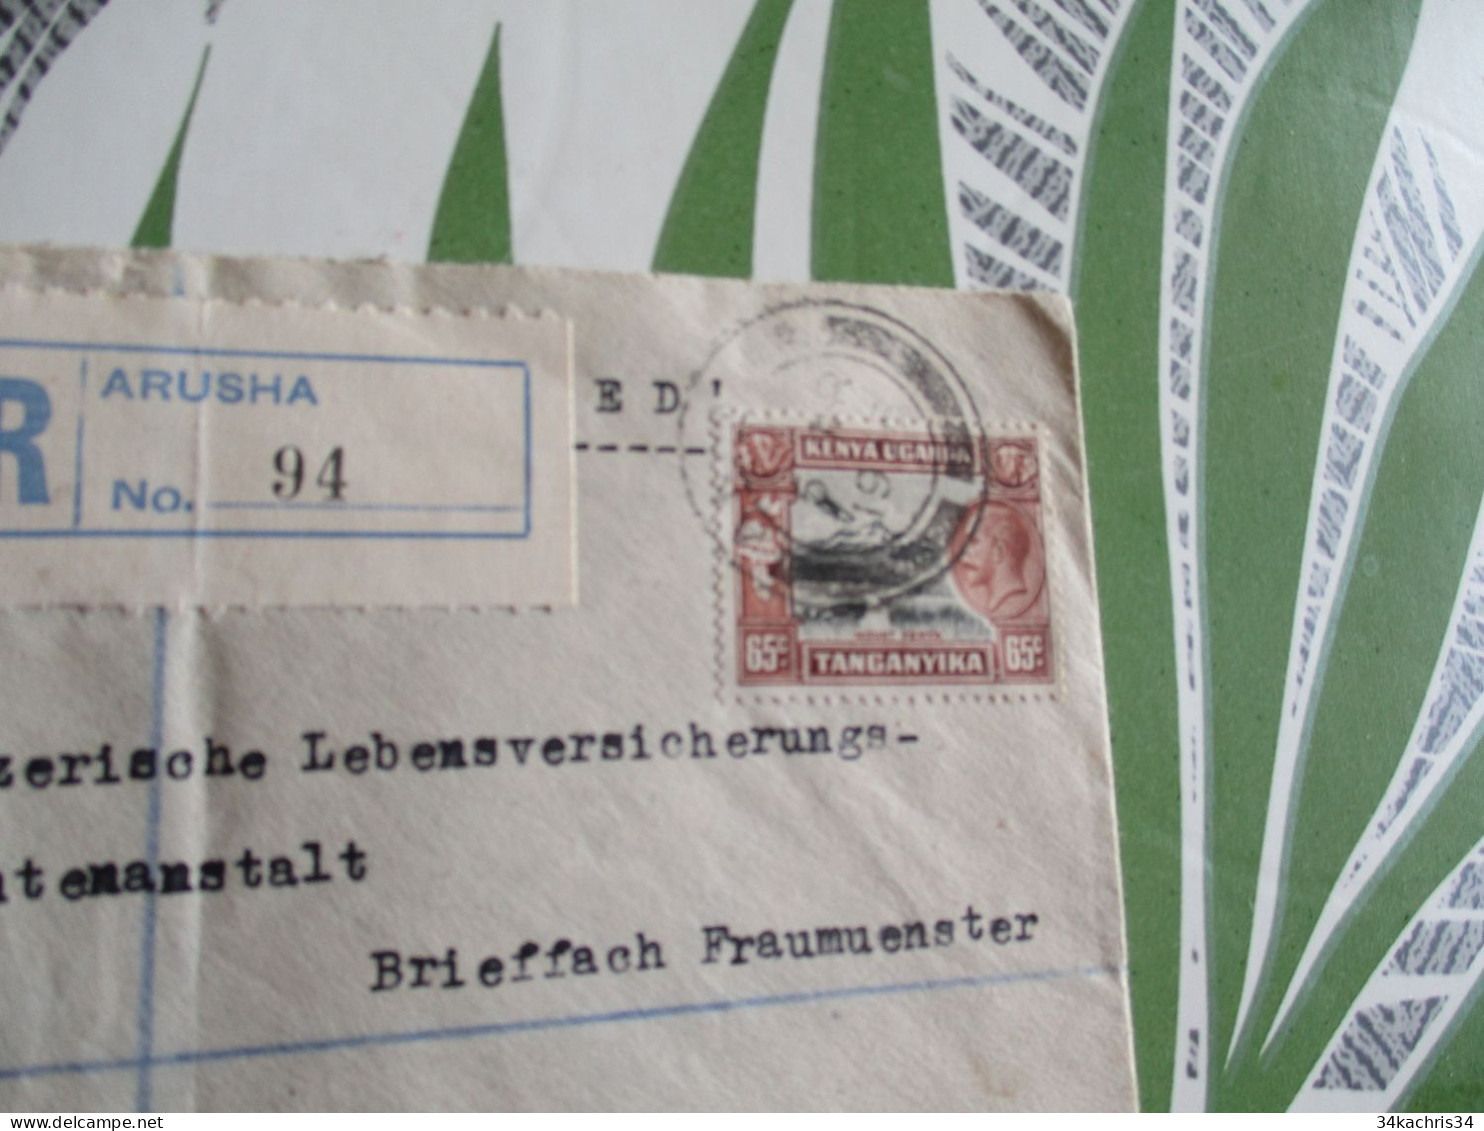 Lettre En Recommandé Arusha 1936 Kenya Uganda Tanganyka E  Pour Zurich Suisse - Kenya, Ouganda & Tanganyika